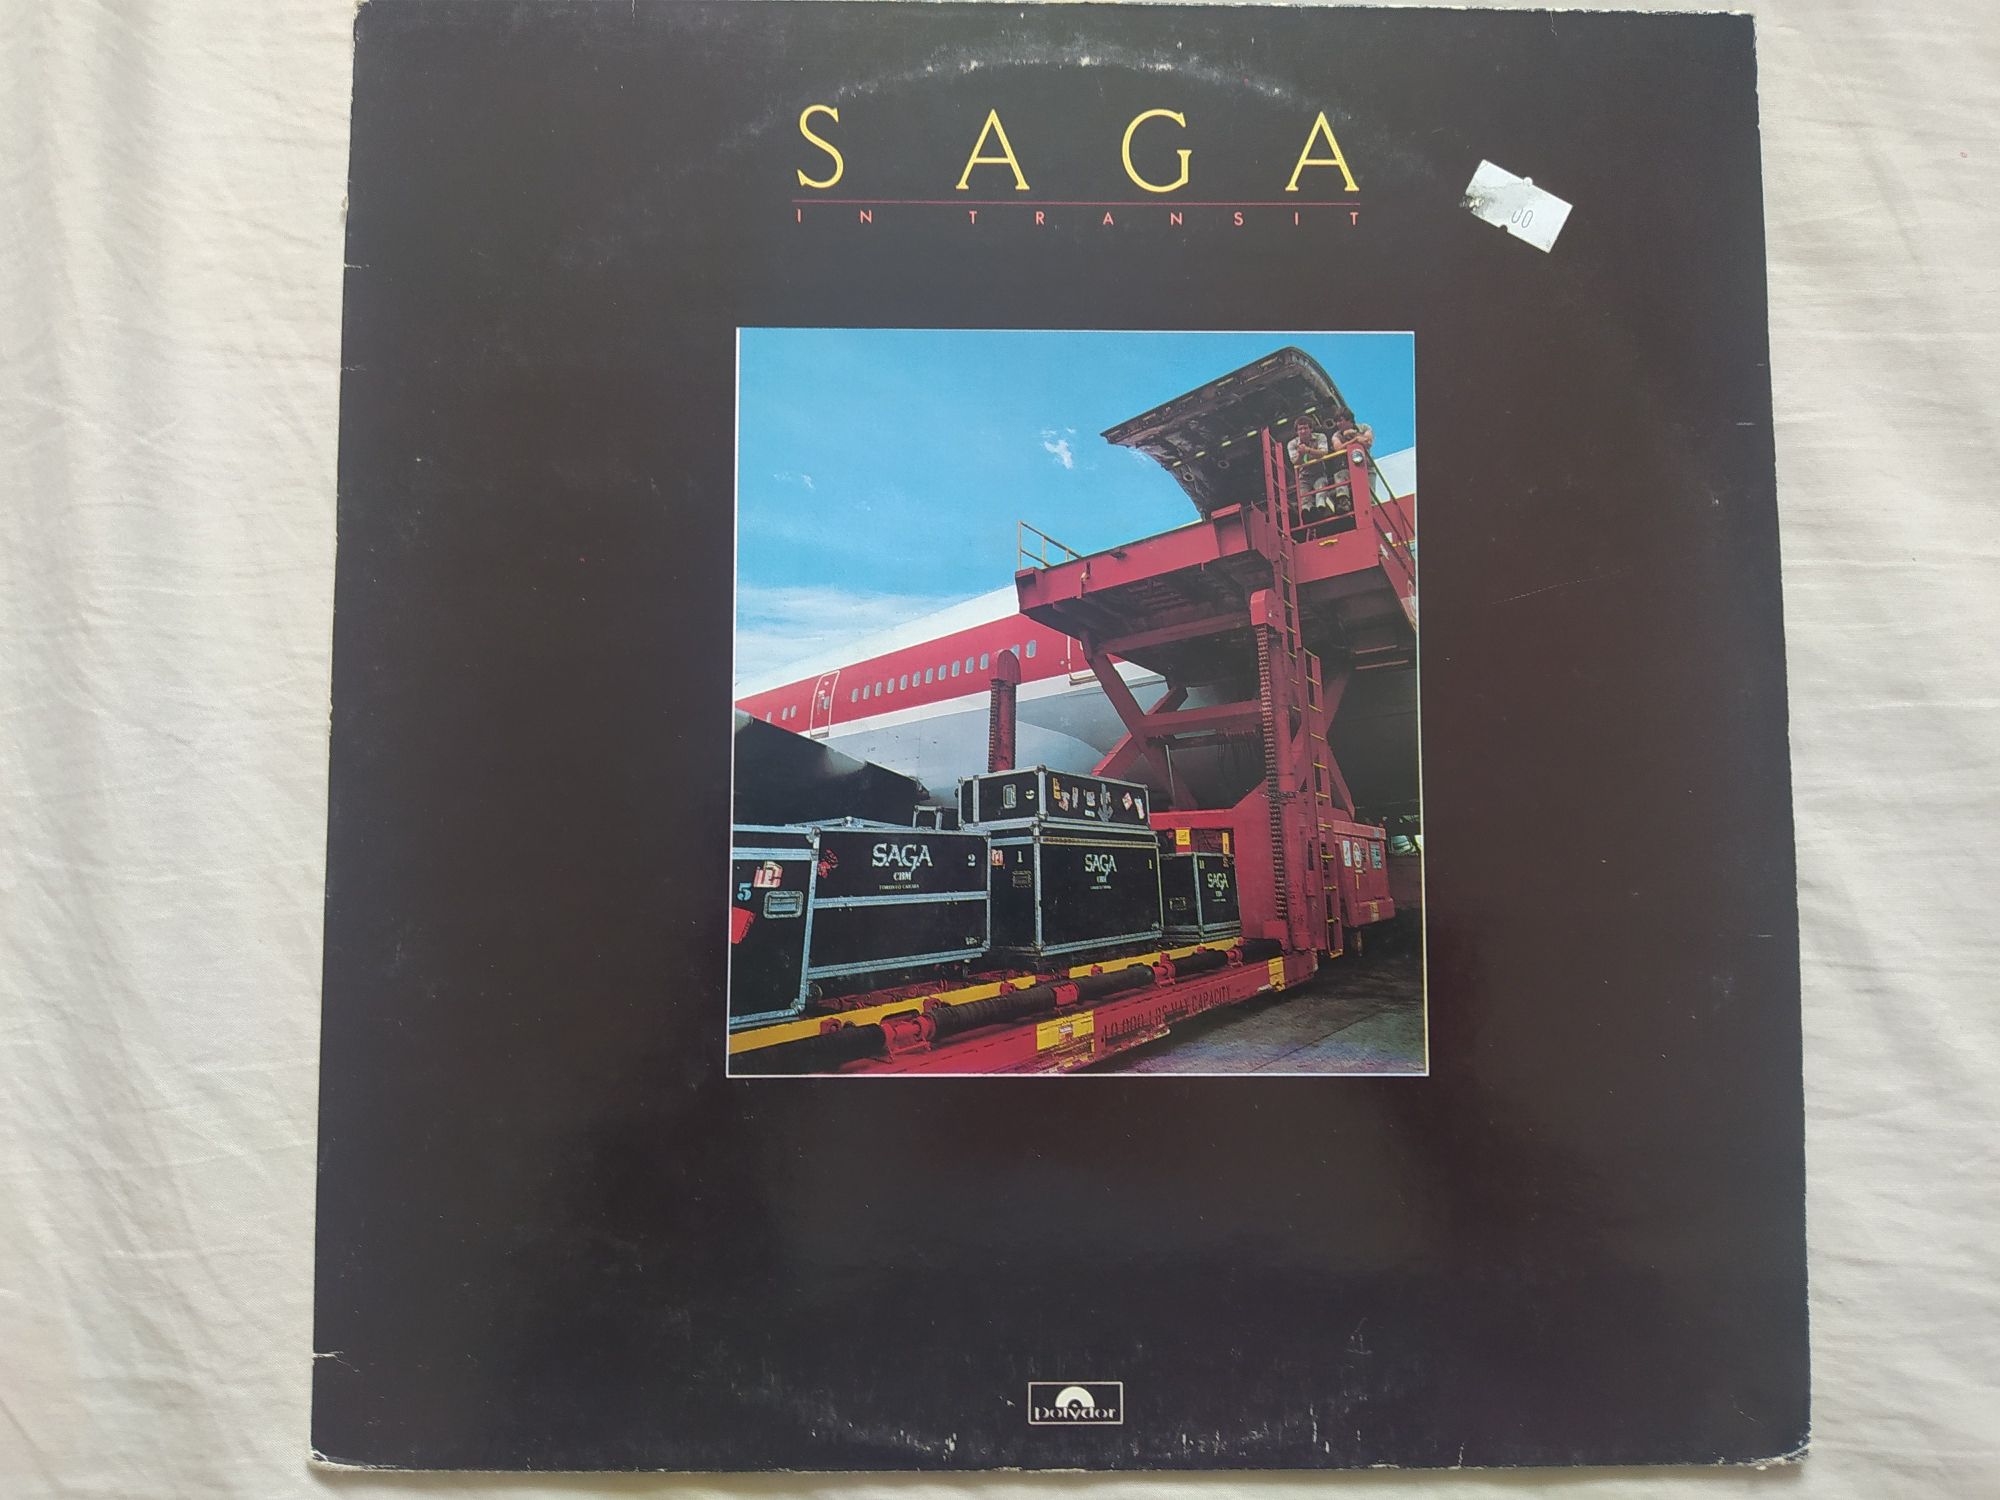 Saga - In Transit Vinyl 1982 press Germany